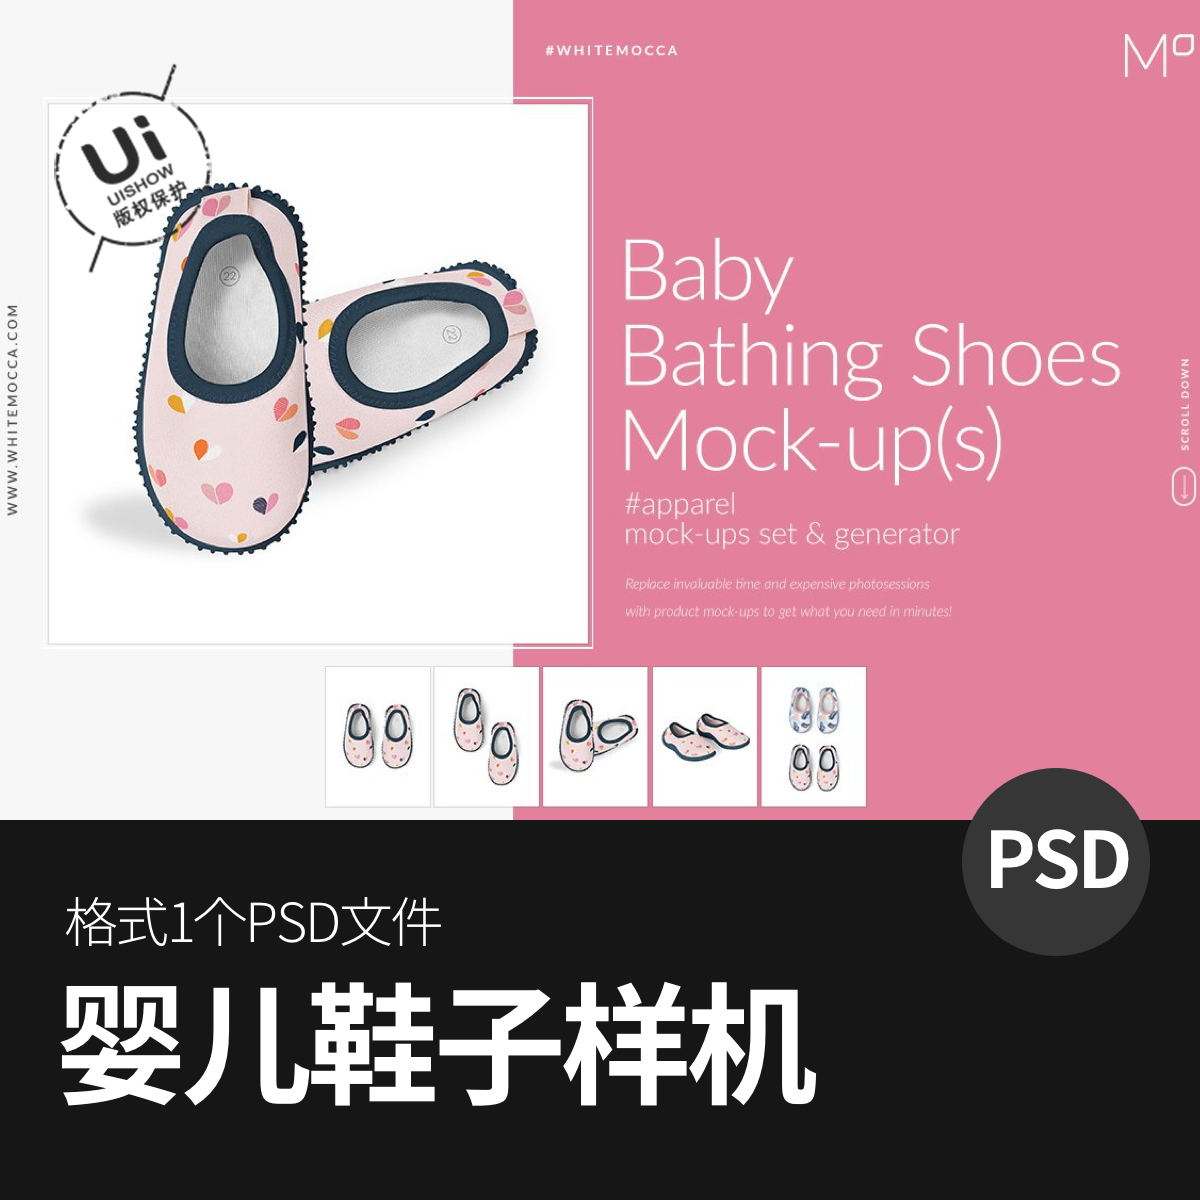 婴儿鞋子产品图案vi智能展示贴图样机模型模板效果图psd设计素材